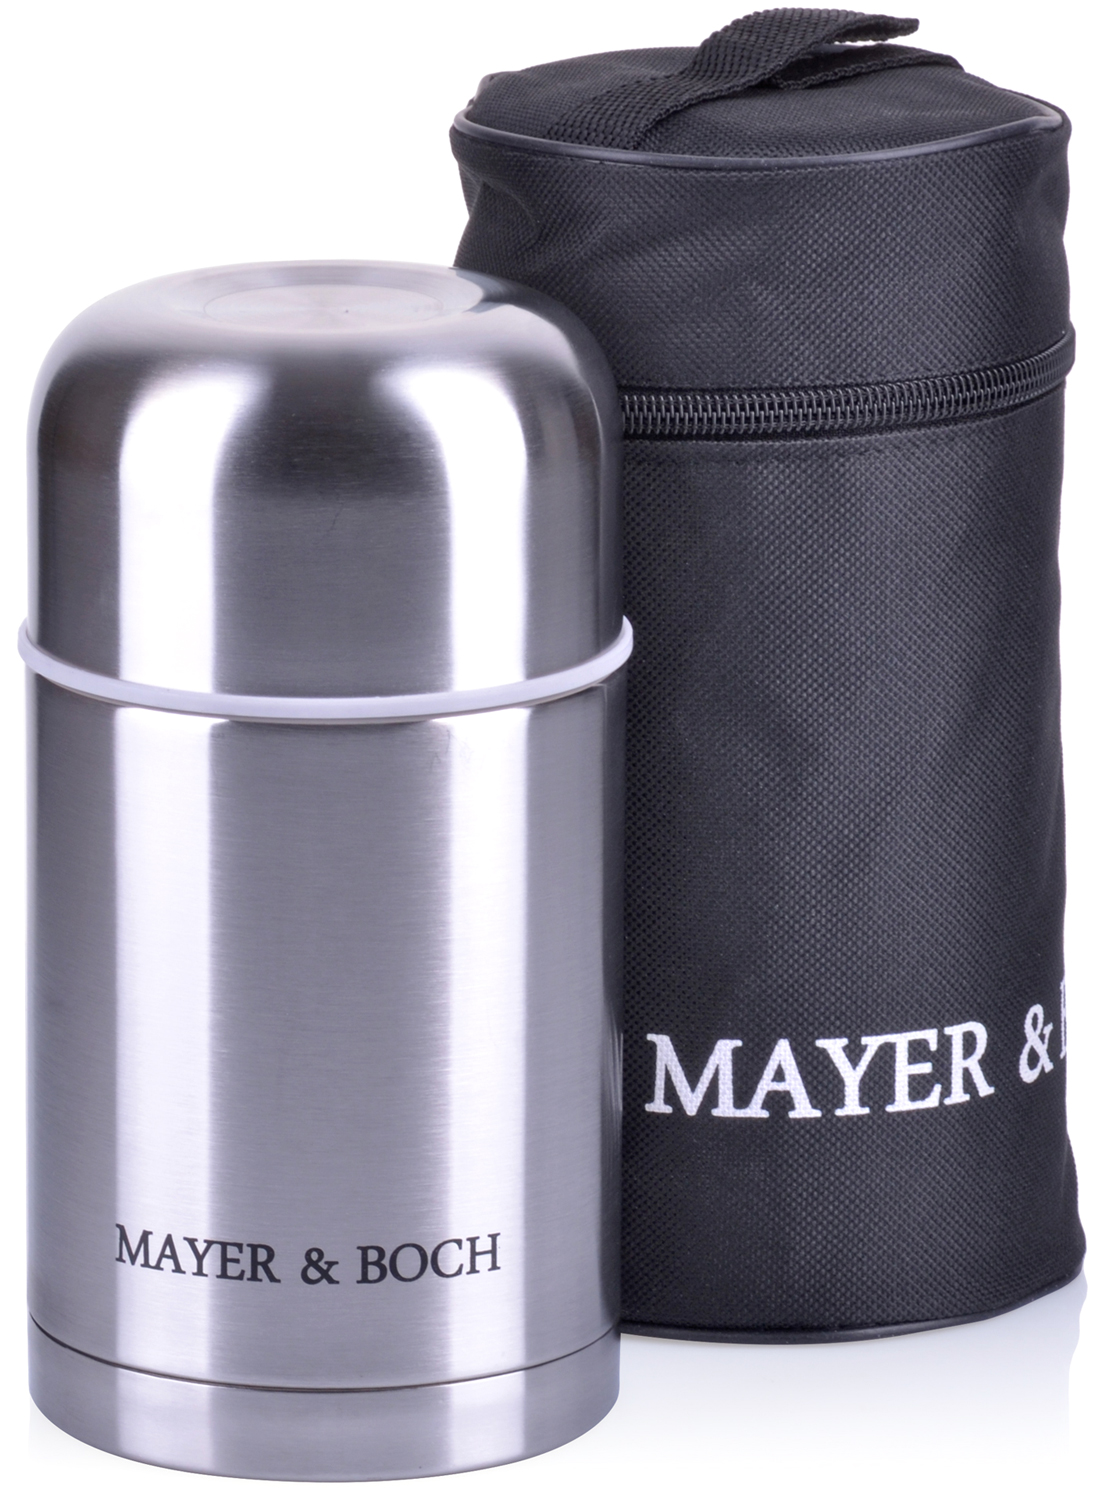 фото Термос Mayer & Boch, с чехлом, цвет: серебристый, объем 0,6 л